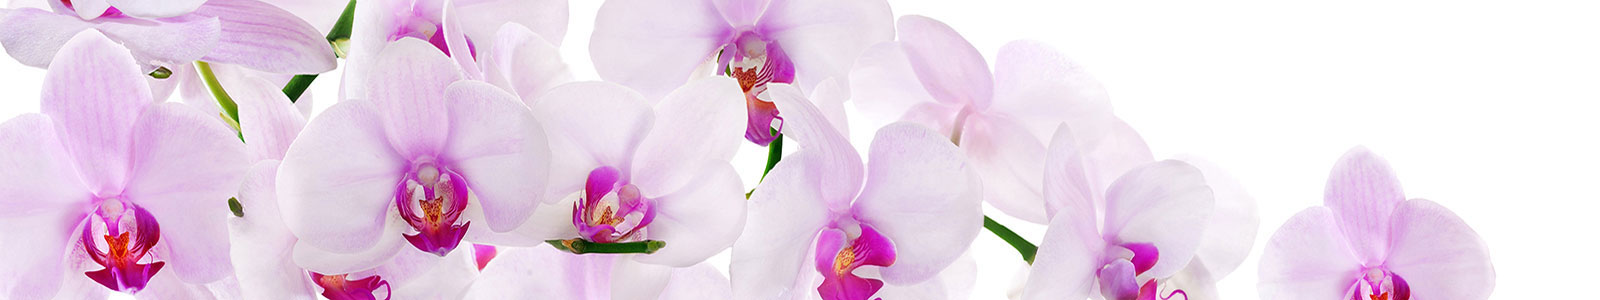 №1966 - Бело-фиолетовые лепестки орхидеи